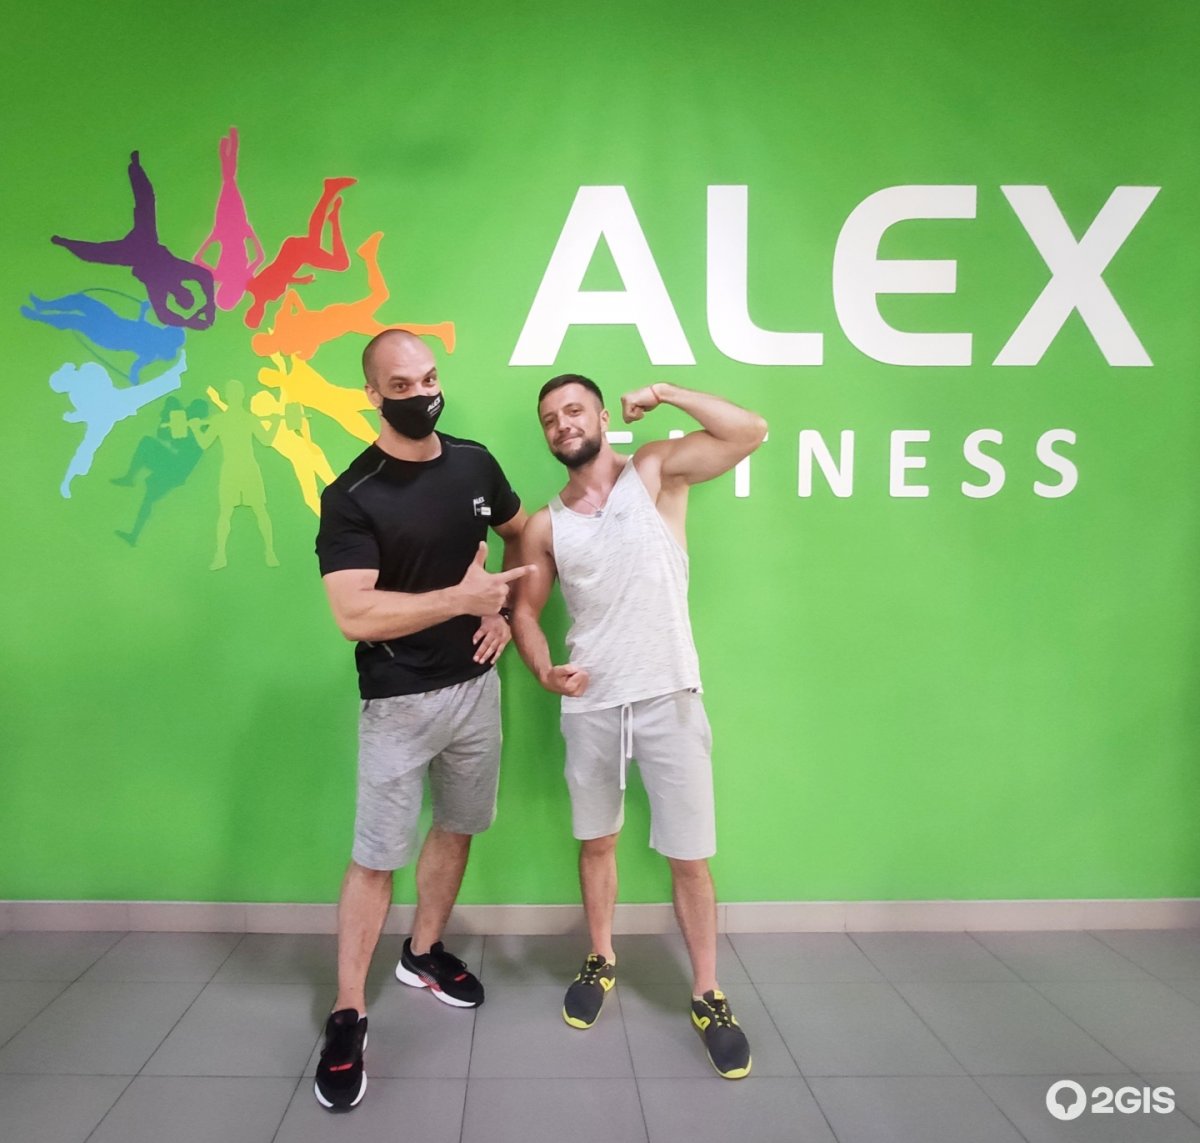 Алекс фитнес слоганы